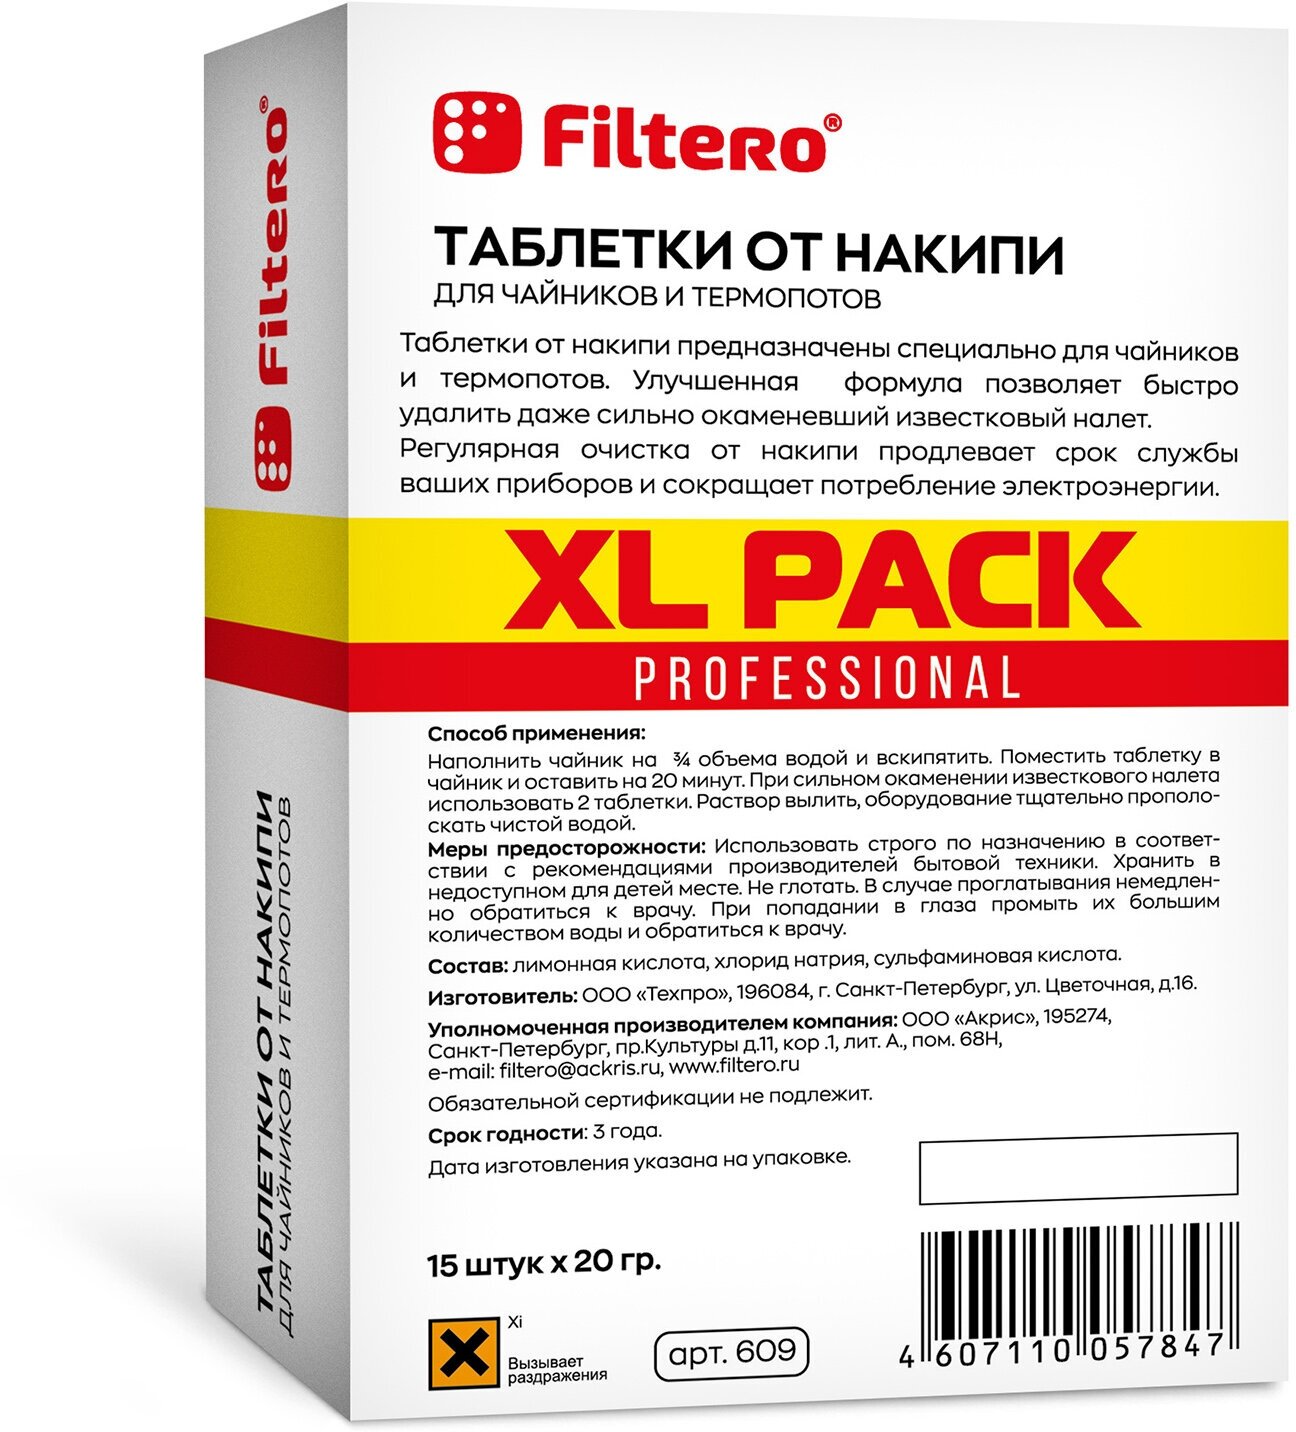 Filtero Комплект XL Pack Таблеток от накипи для чайников и термопотов, 30 штук, Арт.629 - фотография № 4